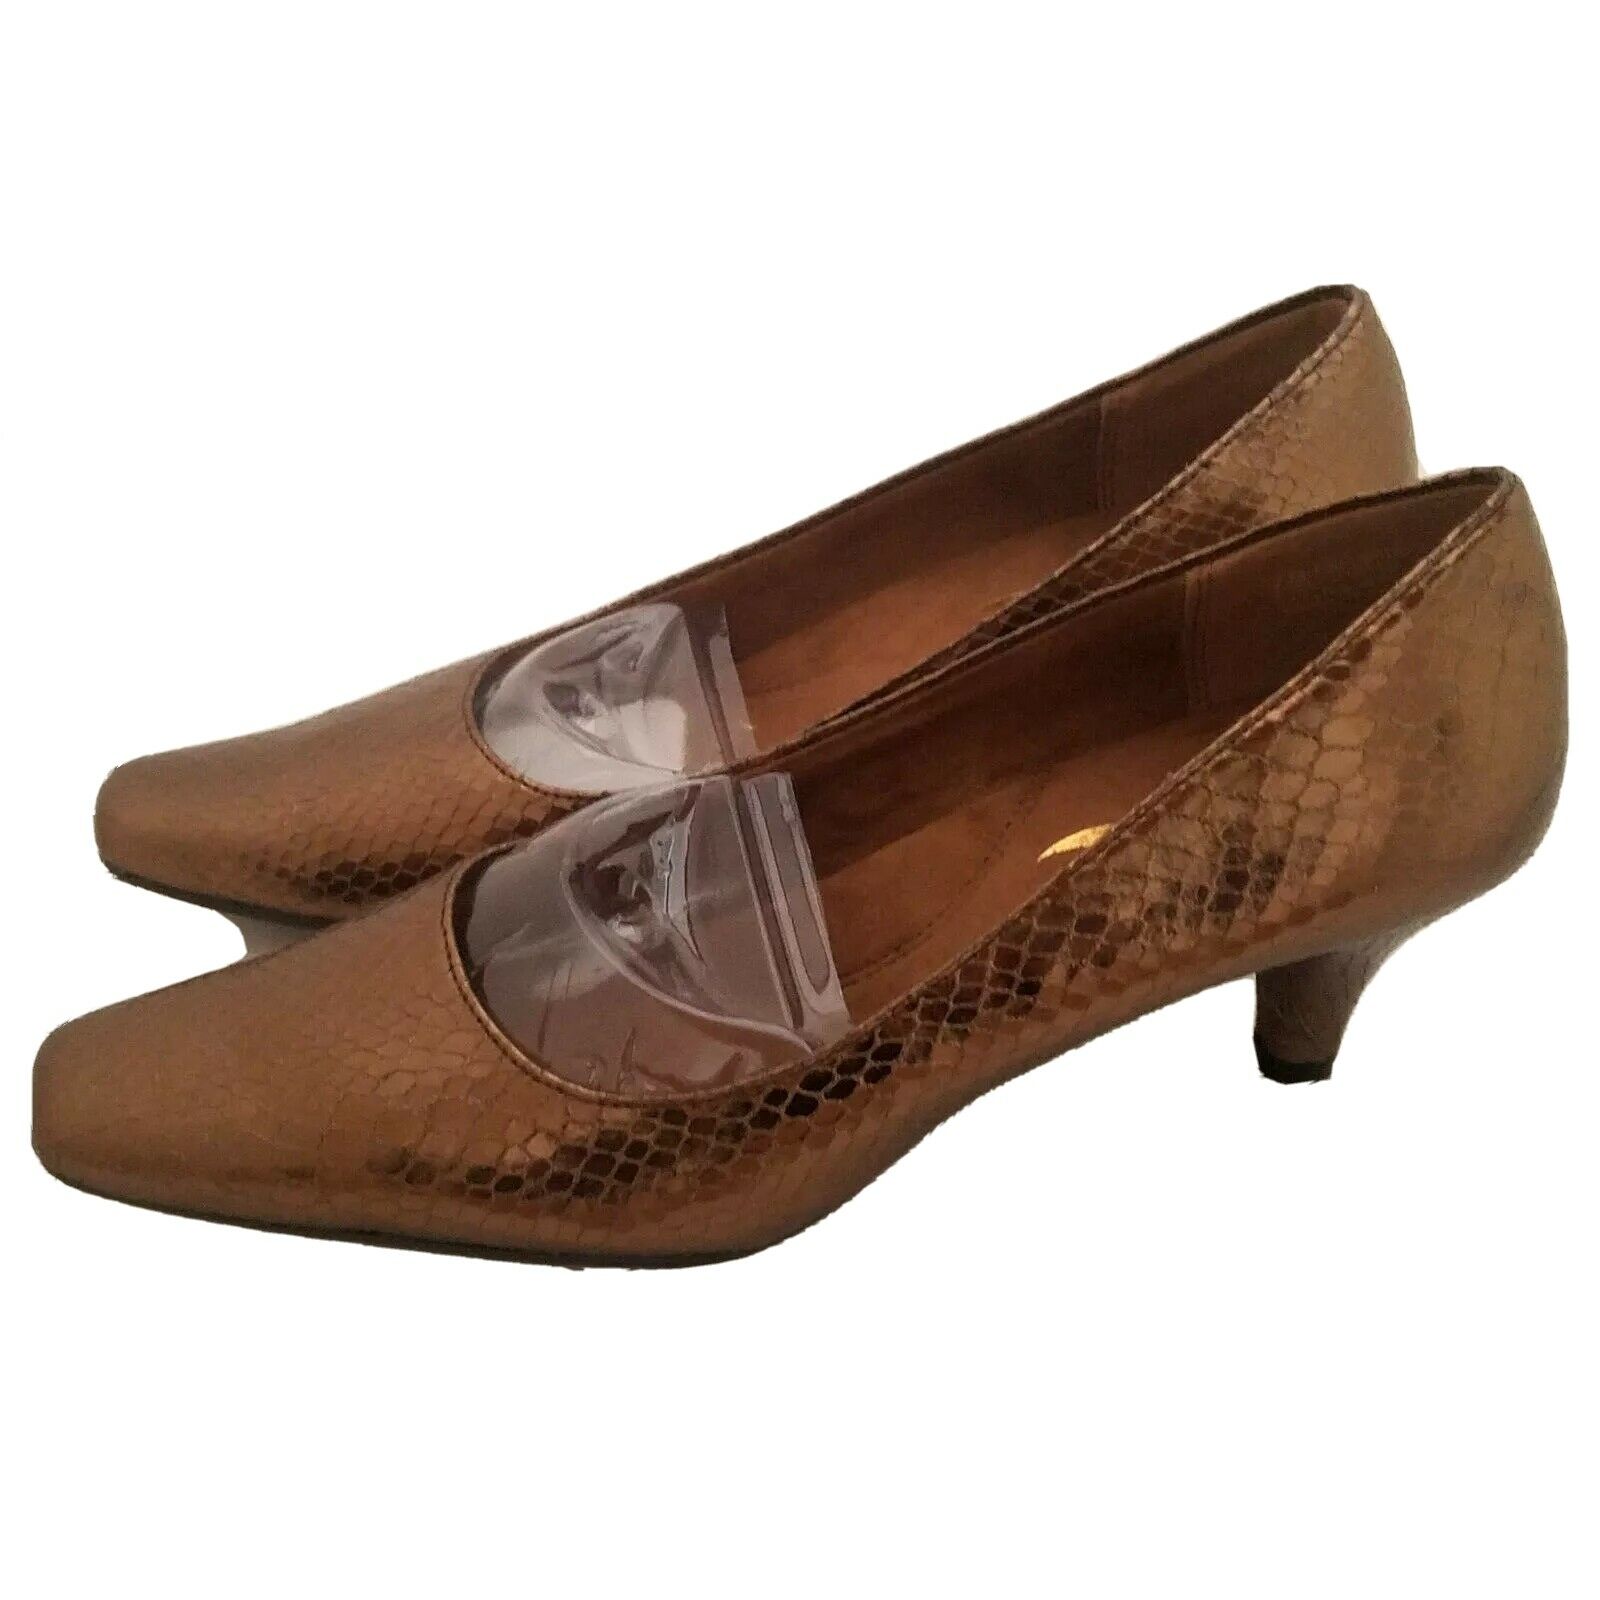 Aerosoles Heelrest Heels Cheerful Bronze Snakeskin Shoes Comfort 7M